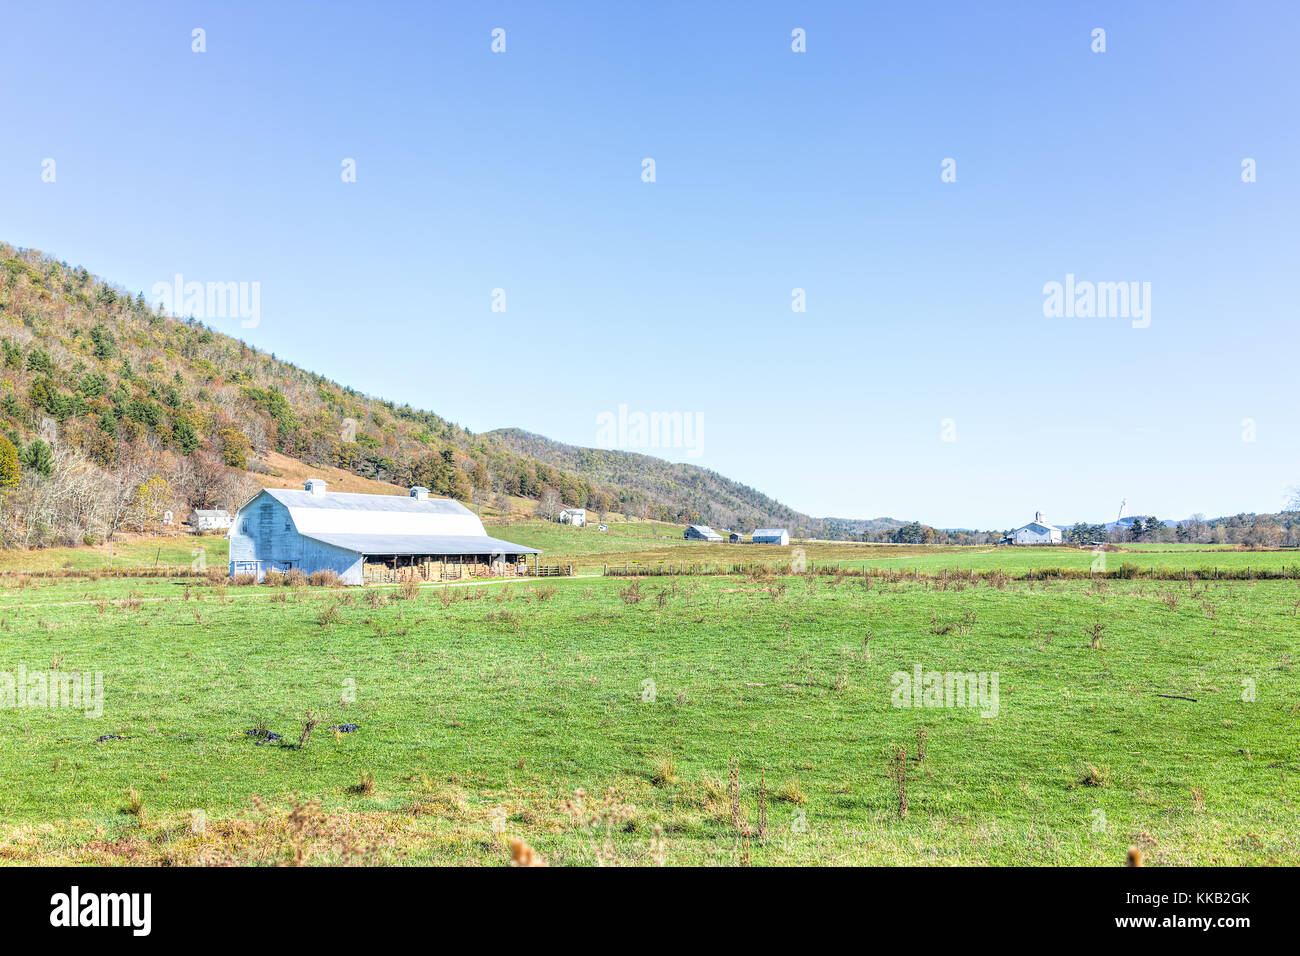 La Virginie de l'Ouest rural paysage avec le radiotélescope de Green Bank et distance campagne agricole à l'automne Banque D'Images